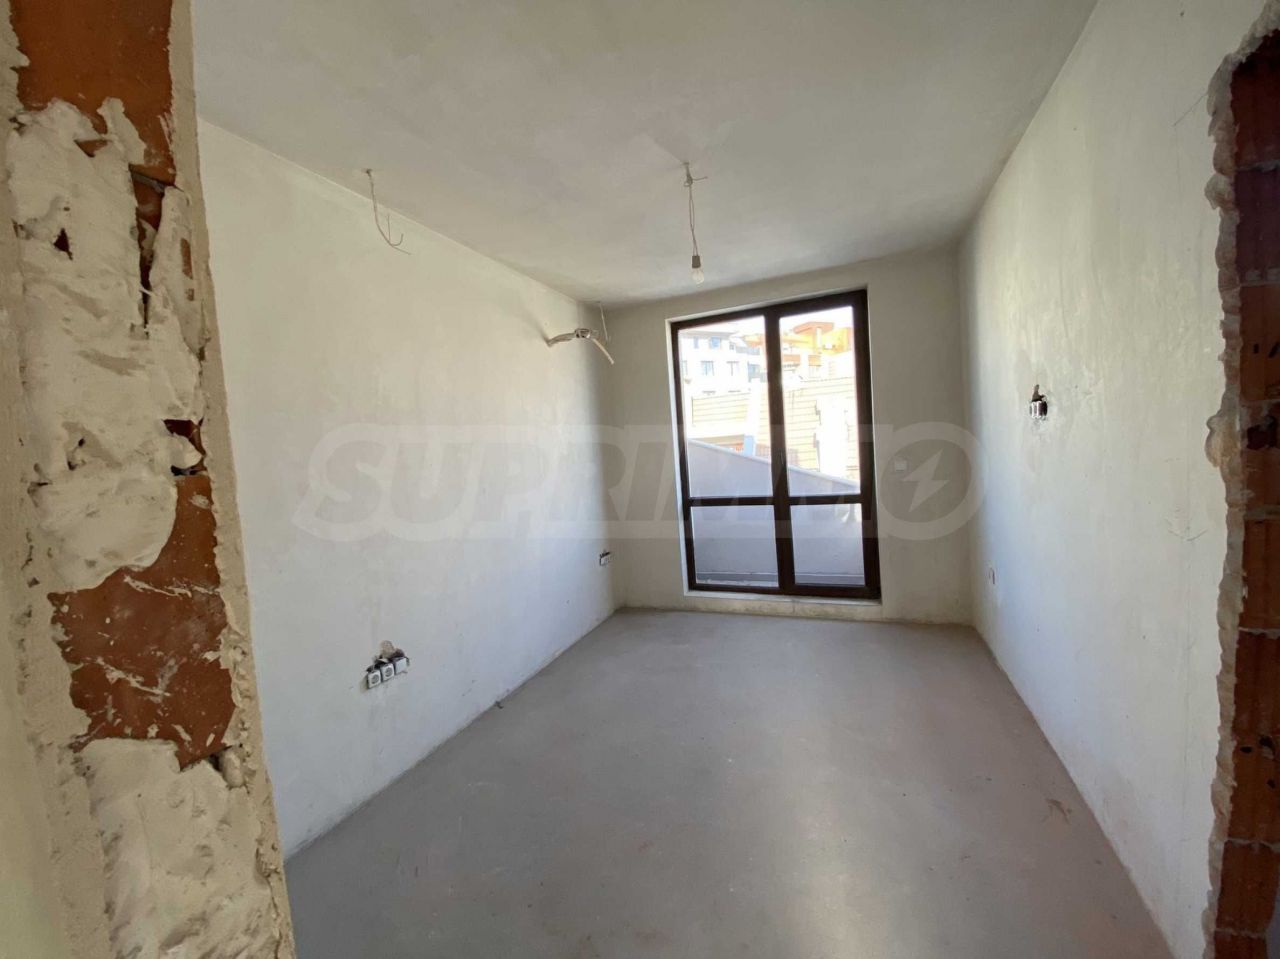 Apartment in Plovdiv, Bulgaria, 74 sq.m - picture 1